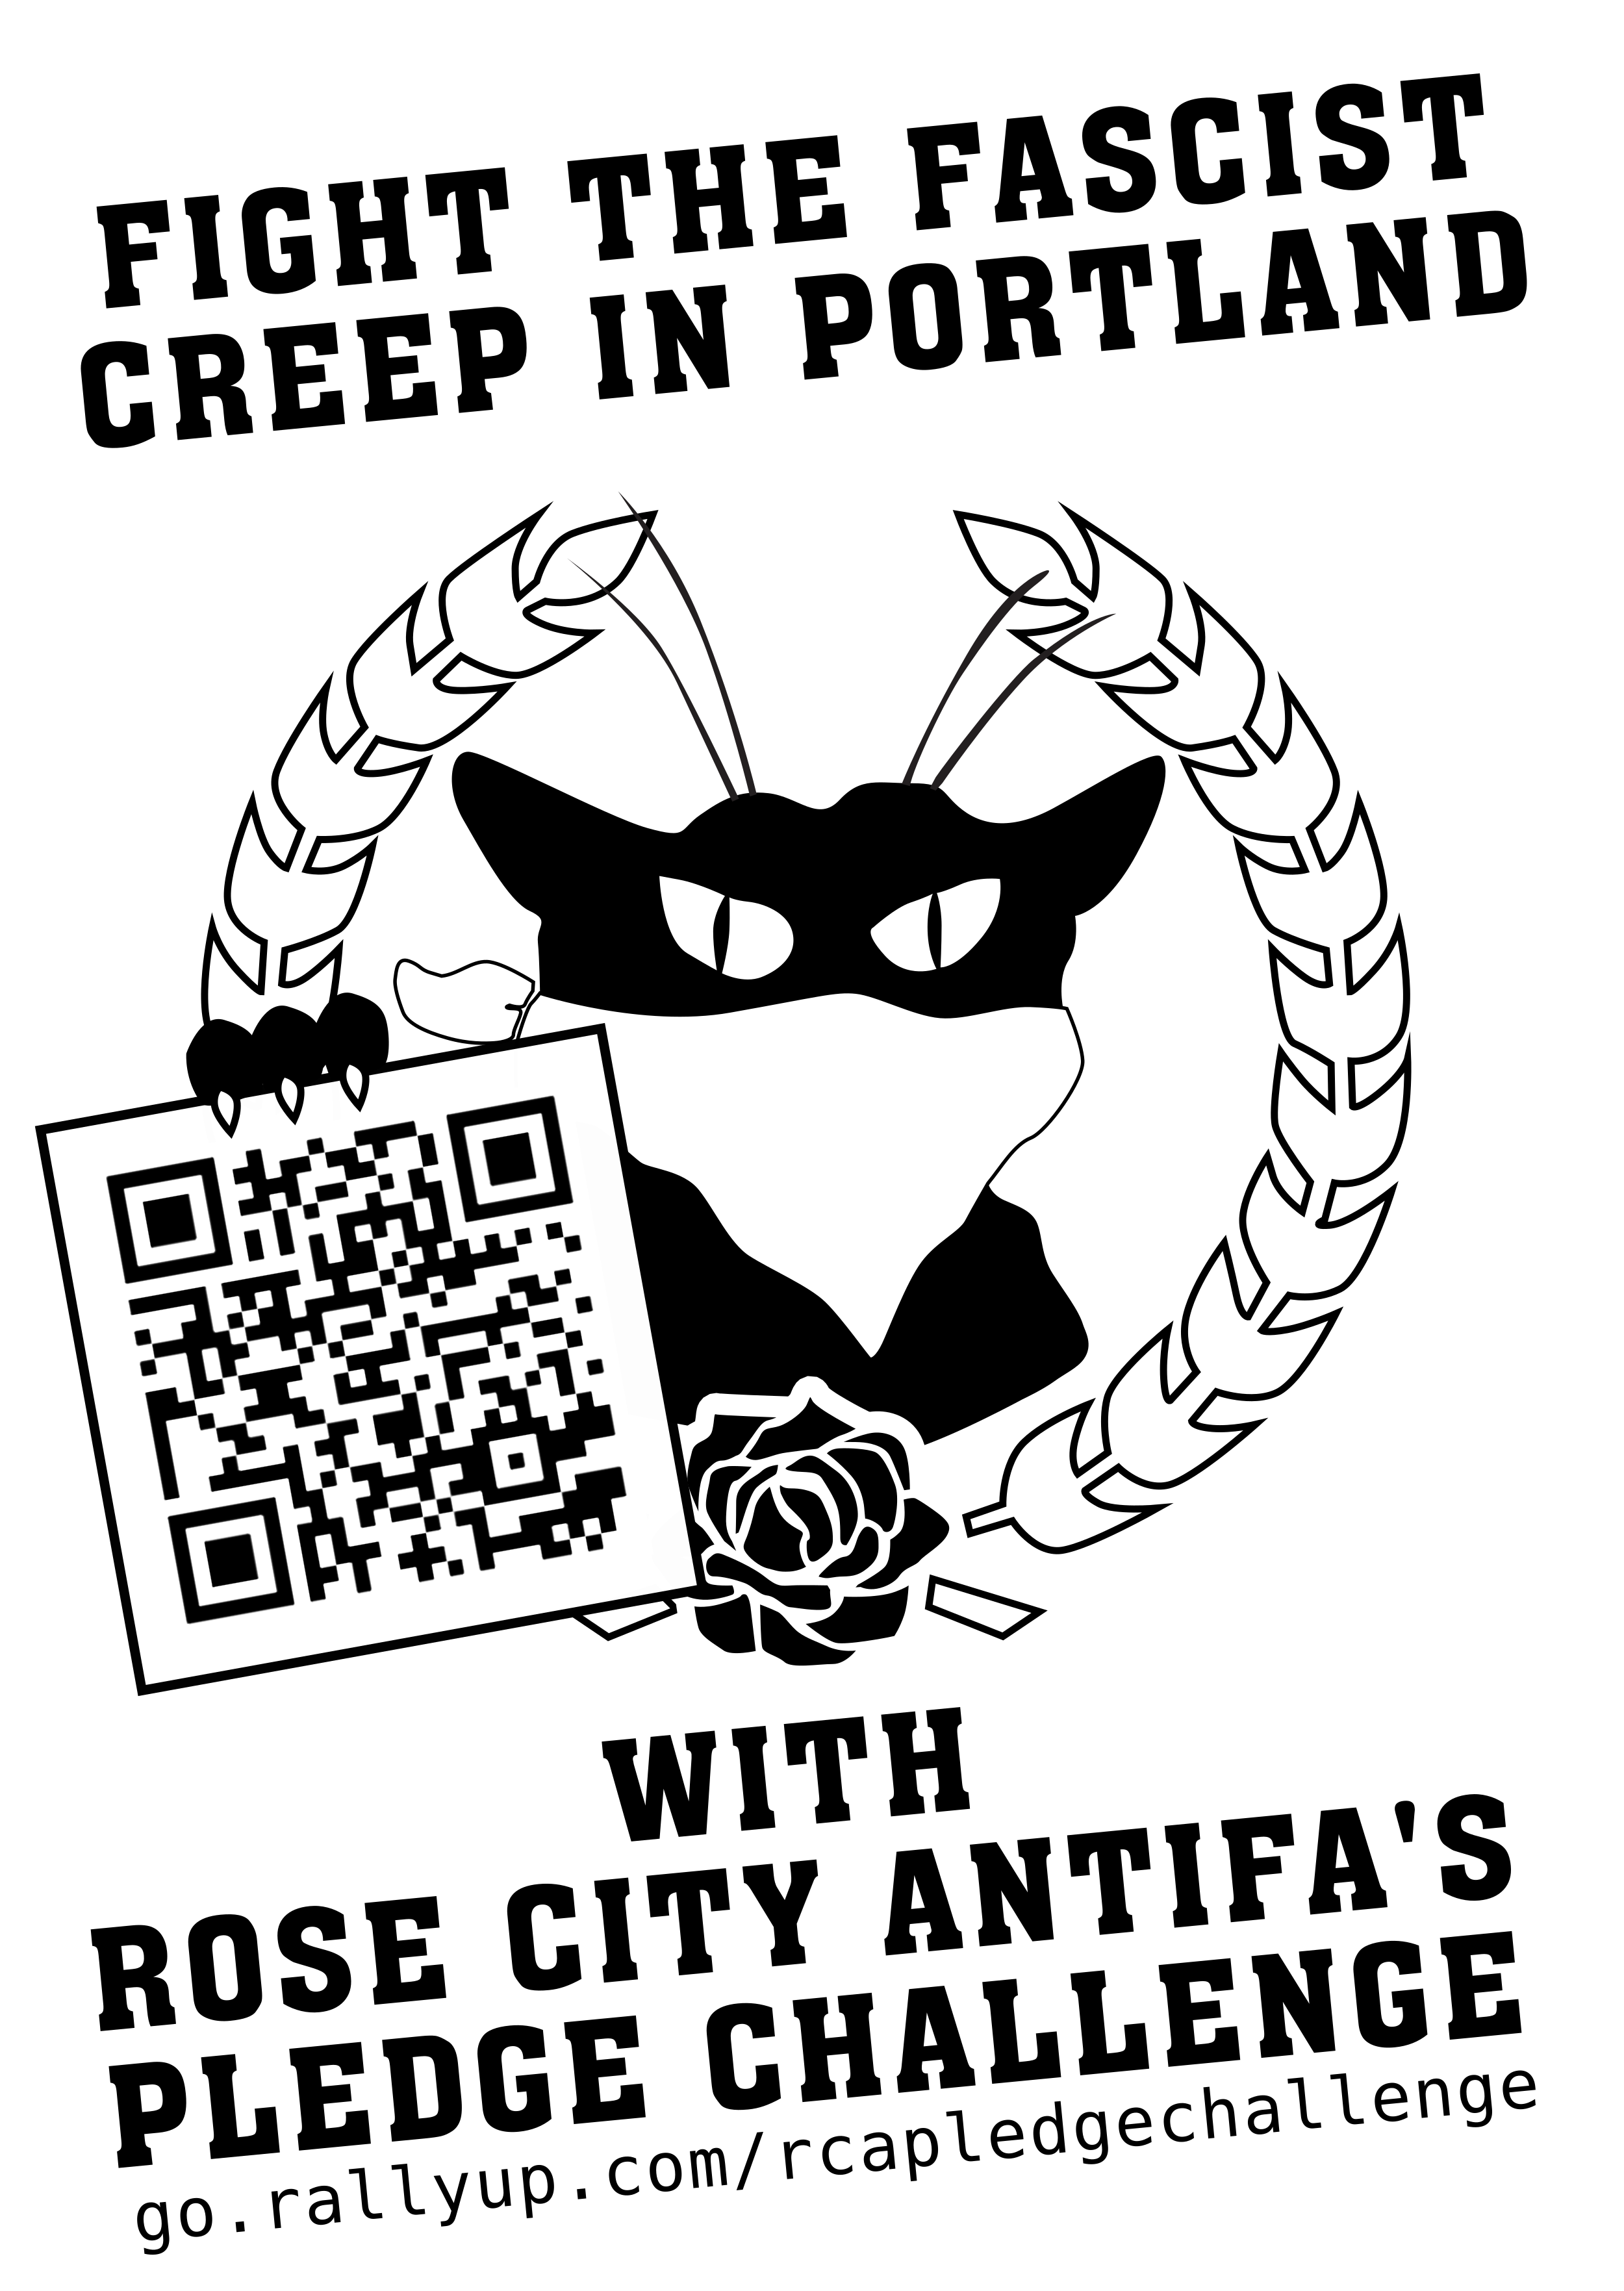 Rose City Antifa's Pledge Challenge!